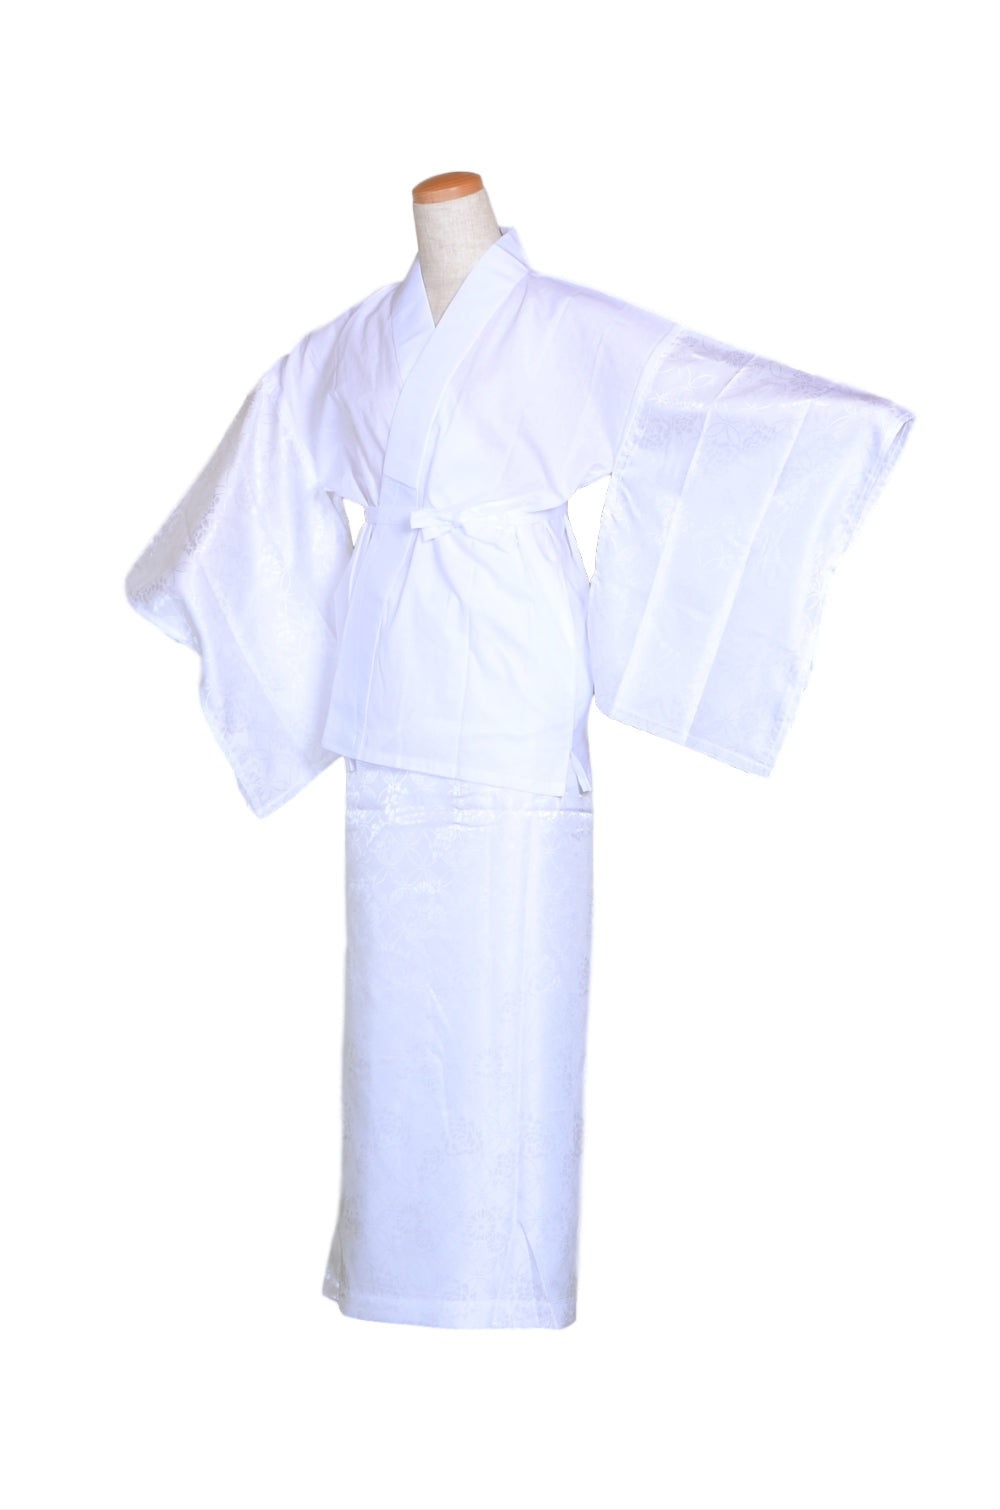 Women undergarment / Two piece : White – Kimono yukata market sakura